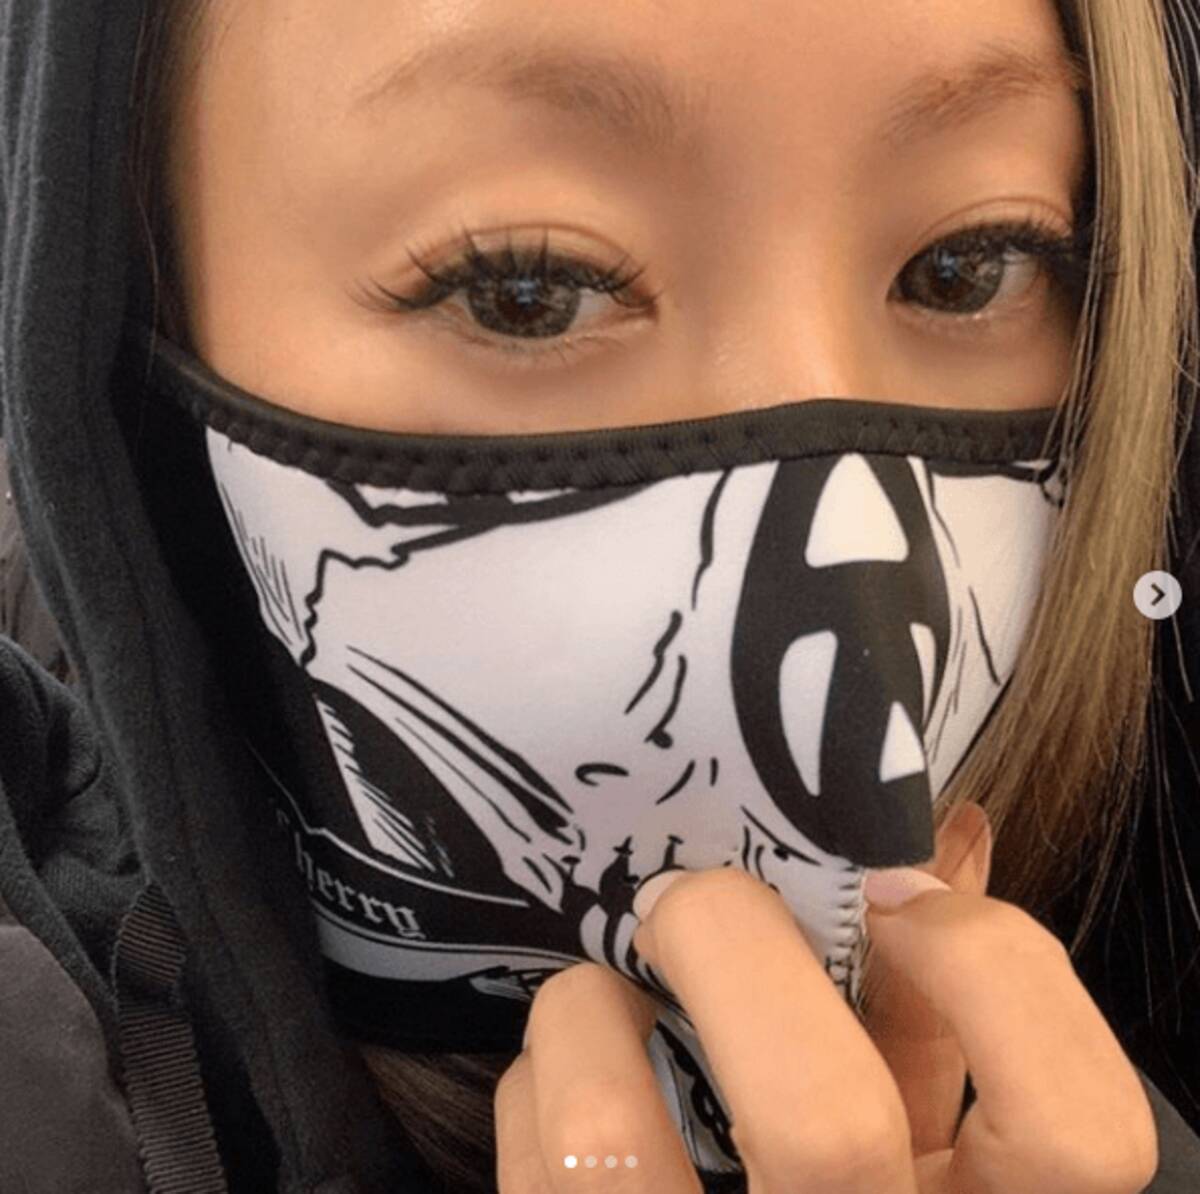 倖田來未 マスク代わり のドクロフェイスshotに 肌綺麗